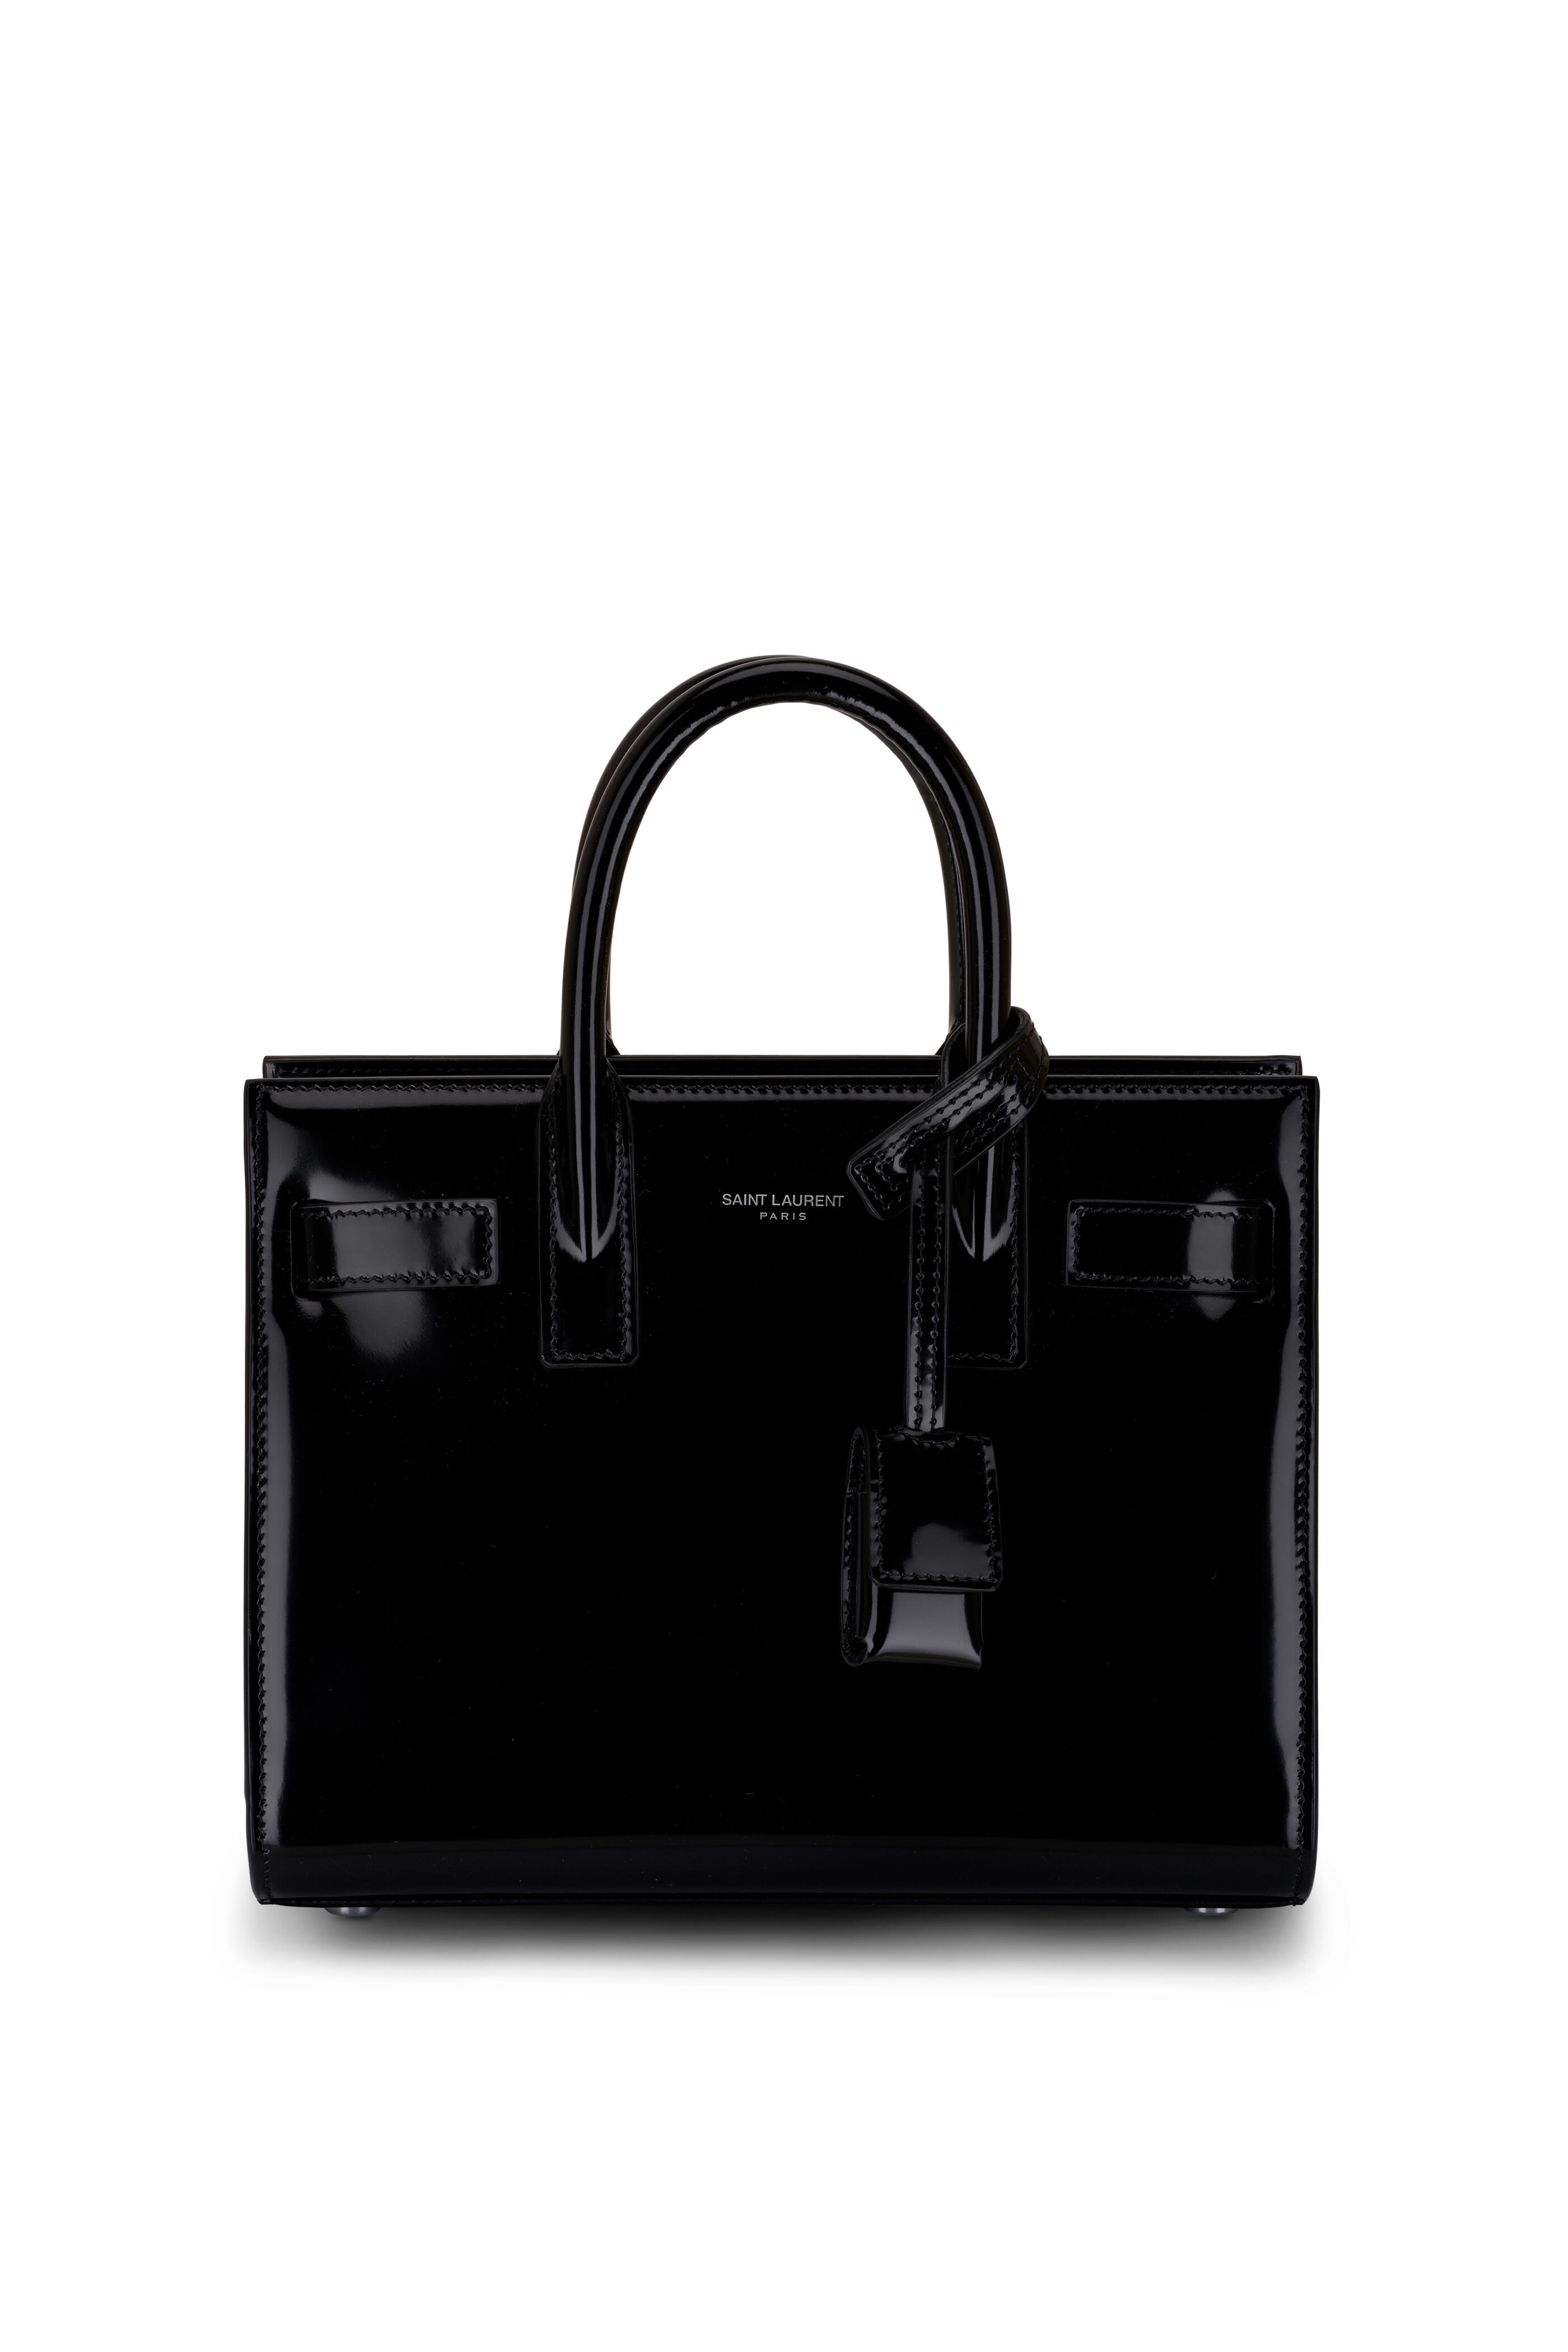 SAINT LAURENT PARIS YSL Sac De Jour Small Black Patent Leather Bag